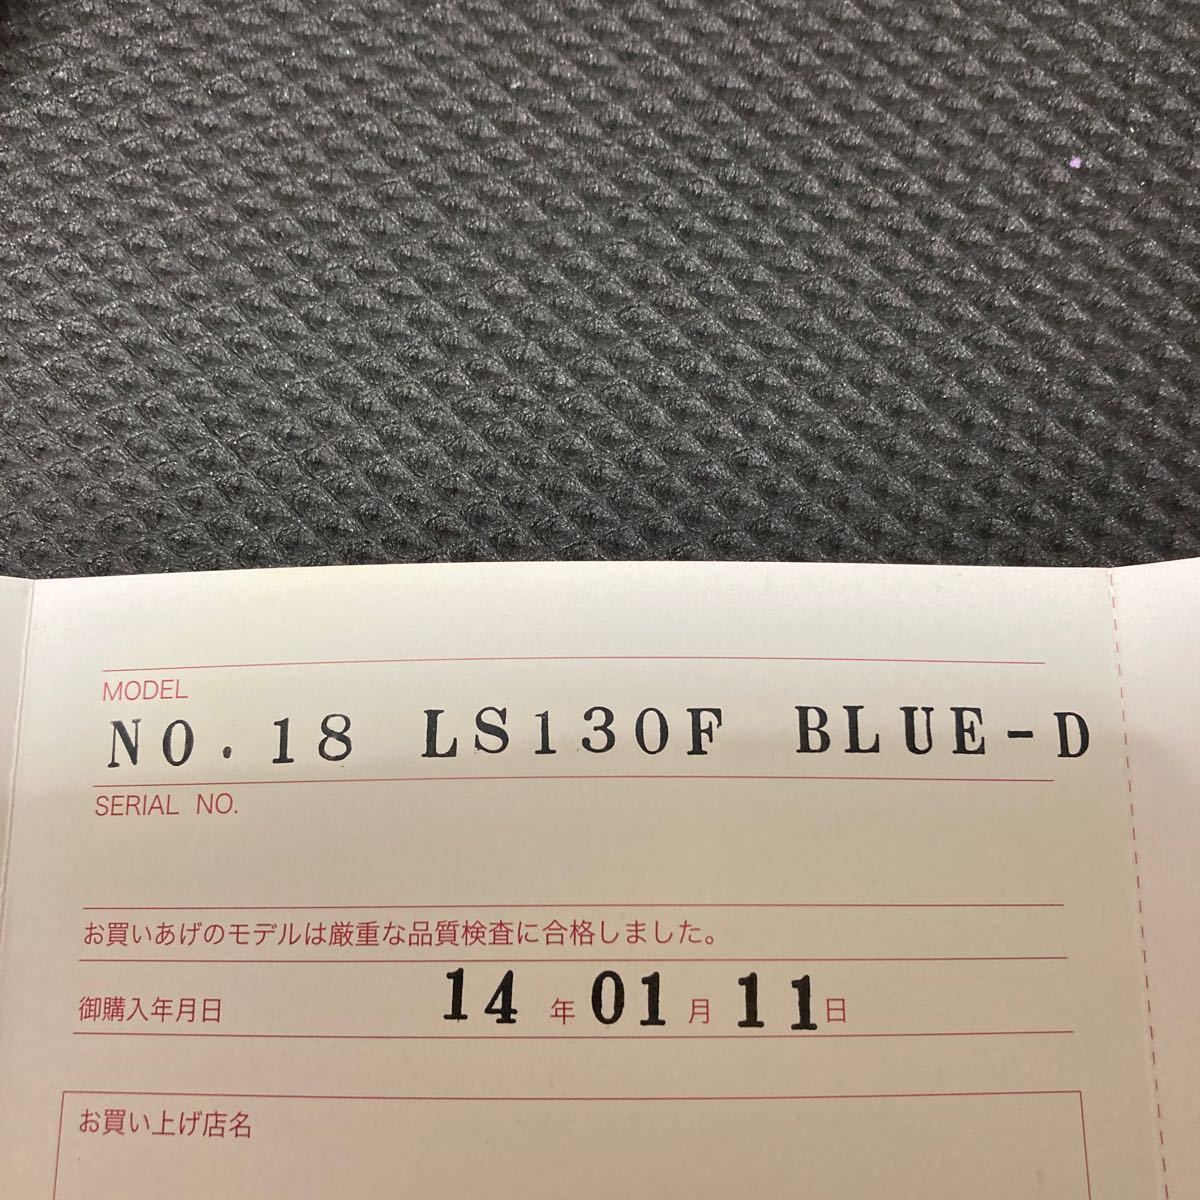 Tokai custom заказ LS130F BLUE-D голубой Denim Lespaul мягкий чехол приложен с гарантией . сделано в Японии цельный красное дерево 